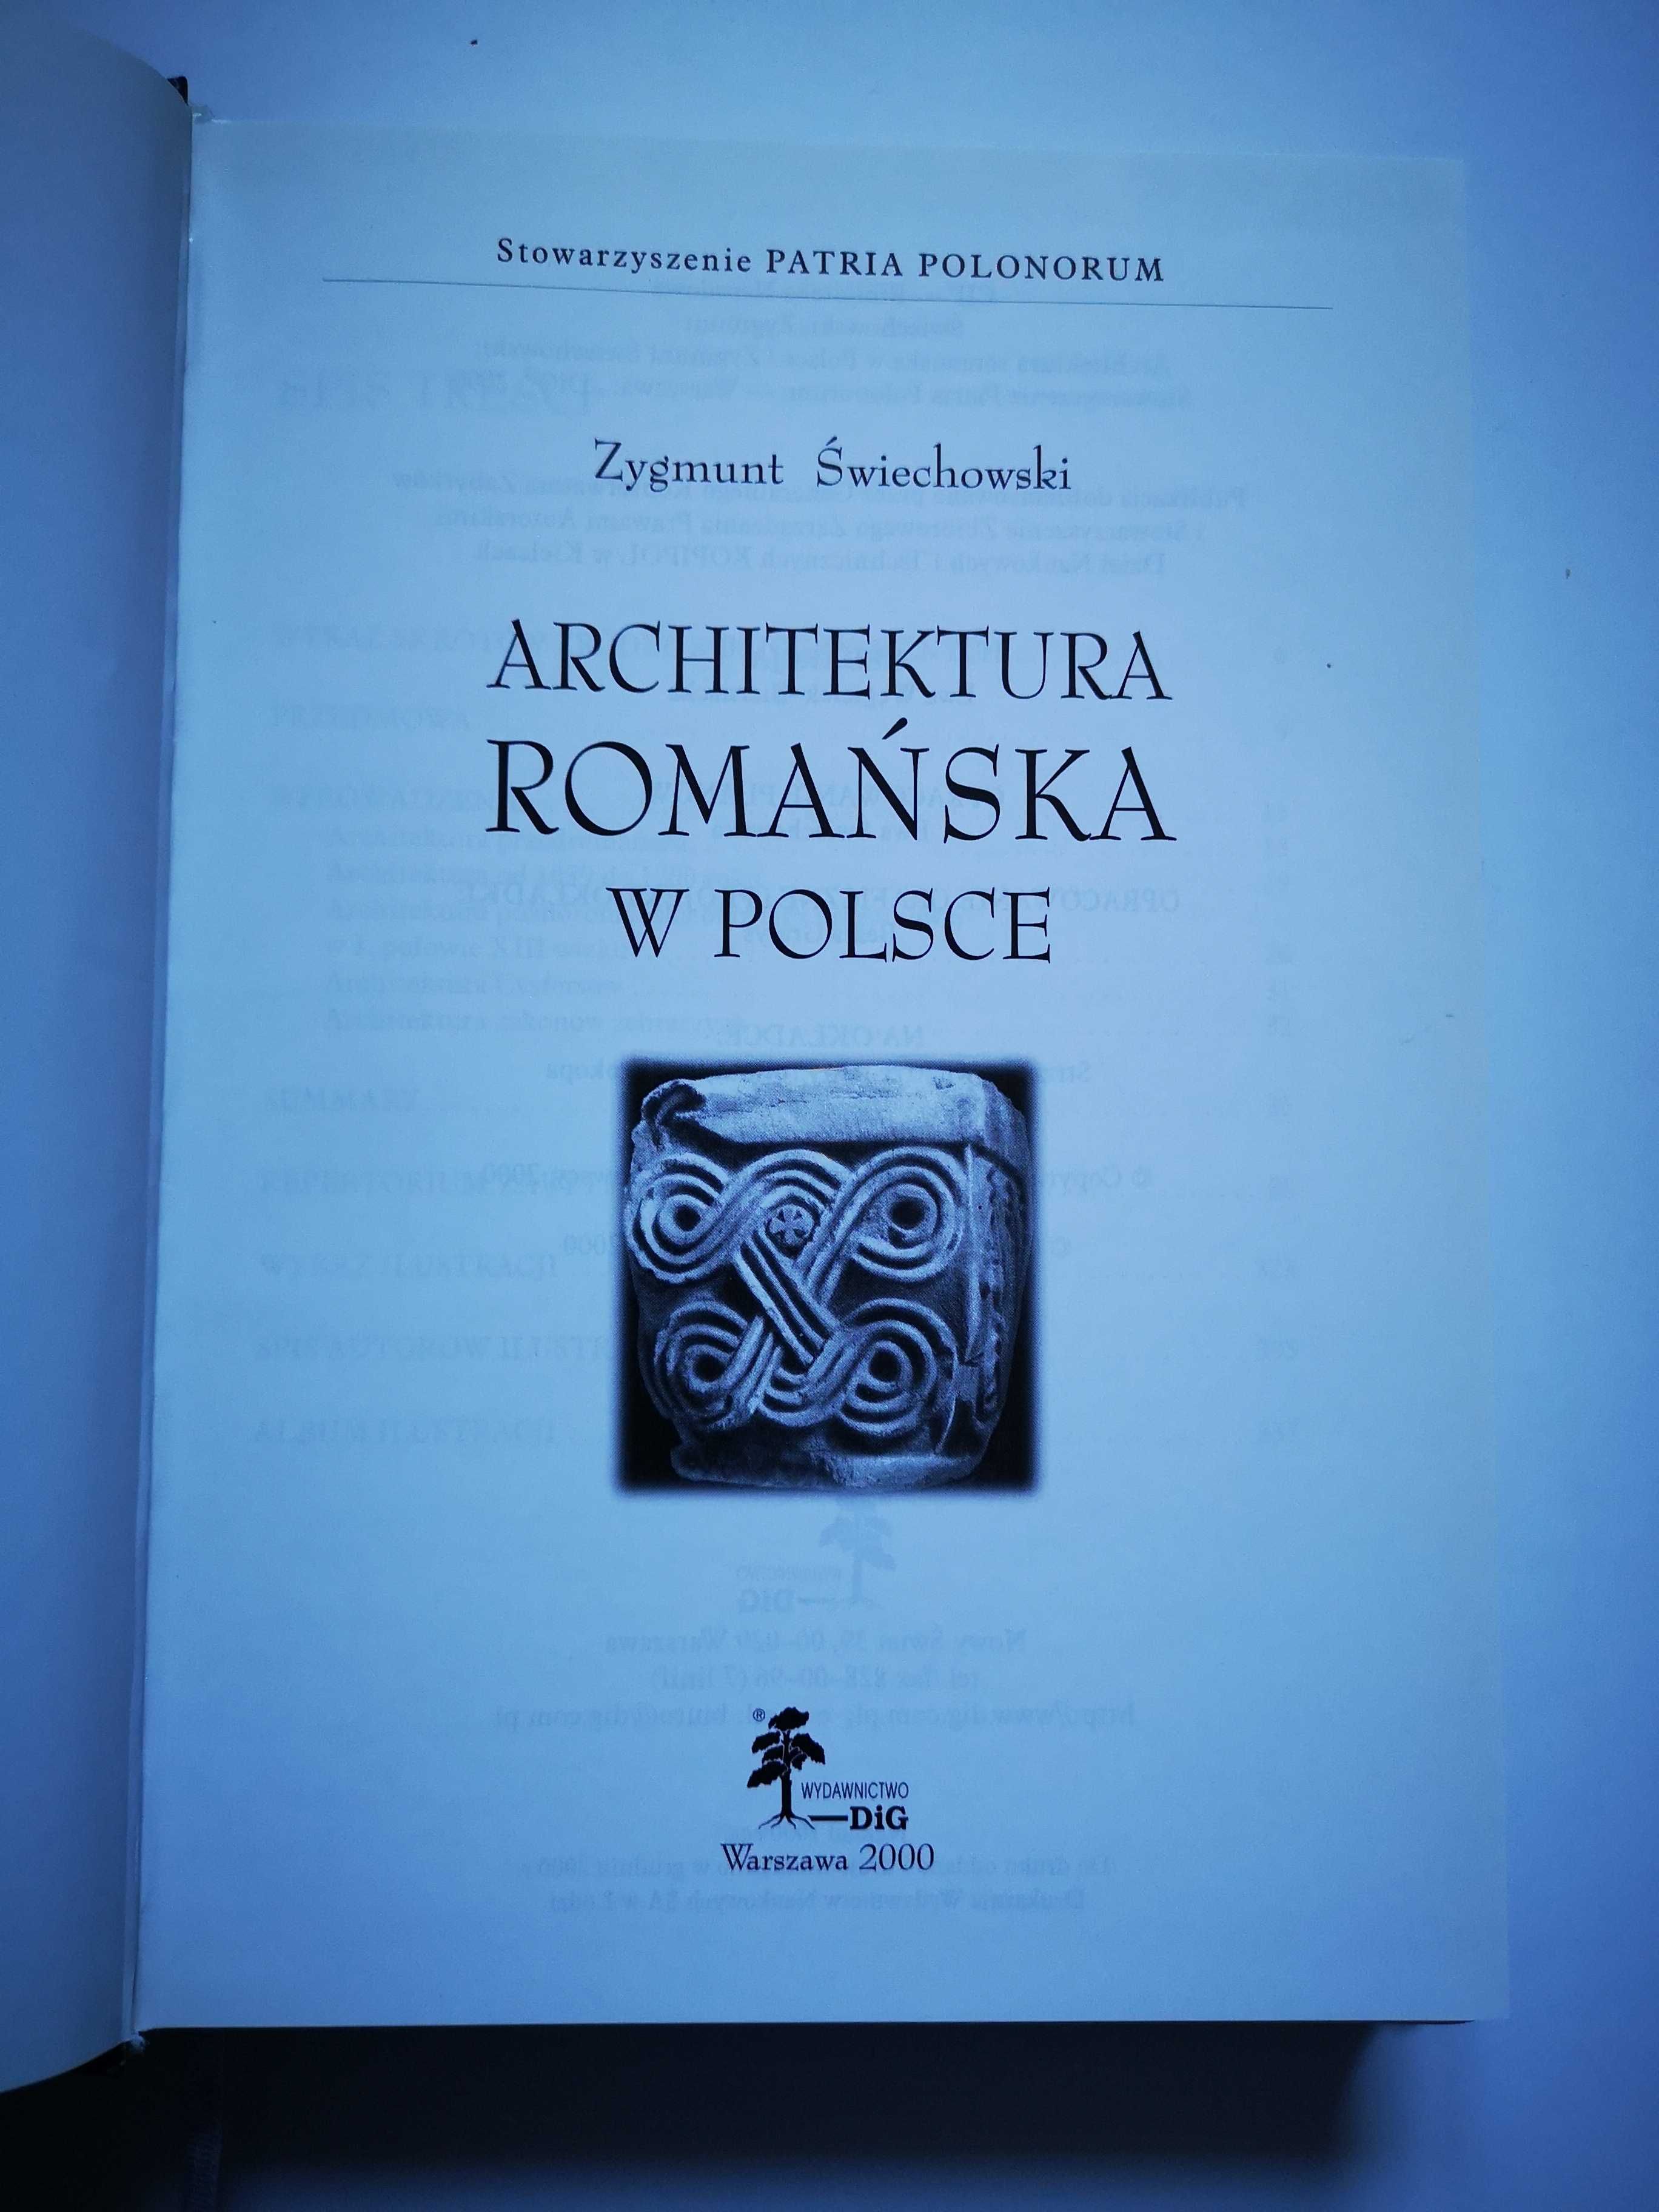 Zygmunt Świechowski "Architektura romańska w Polsce"